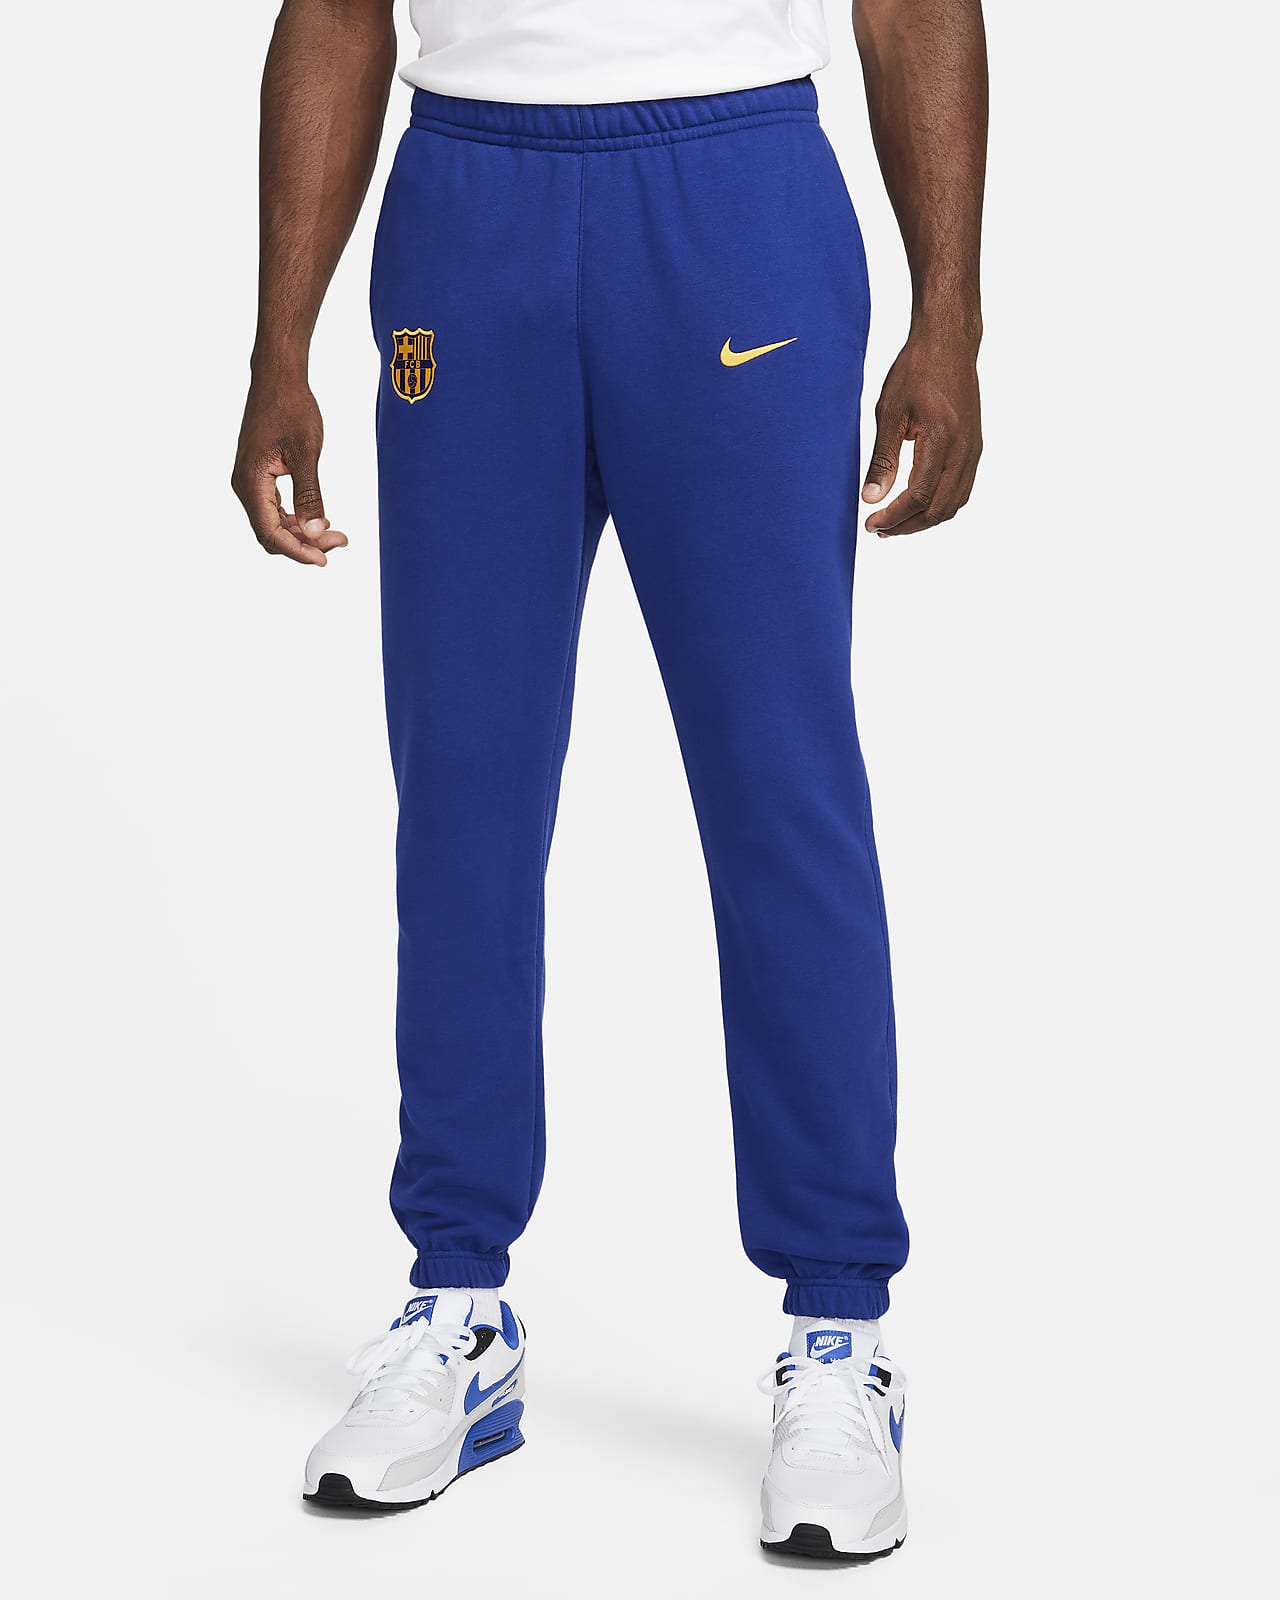 Ανδρικό ποδοσφαιρικό παντελόνι από ύφασμα French Terry Nike Μπαρτσελόνα Club